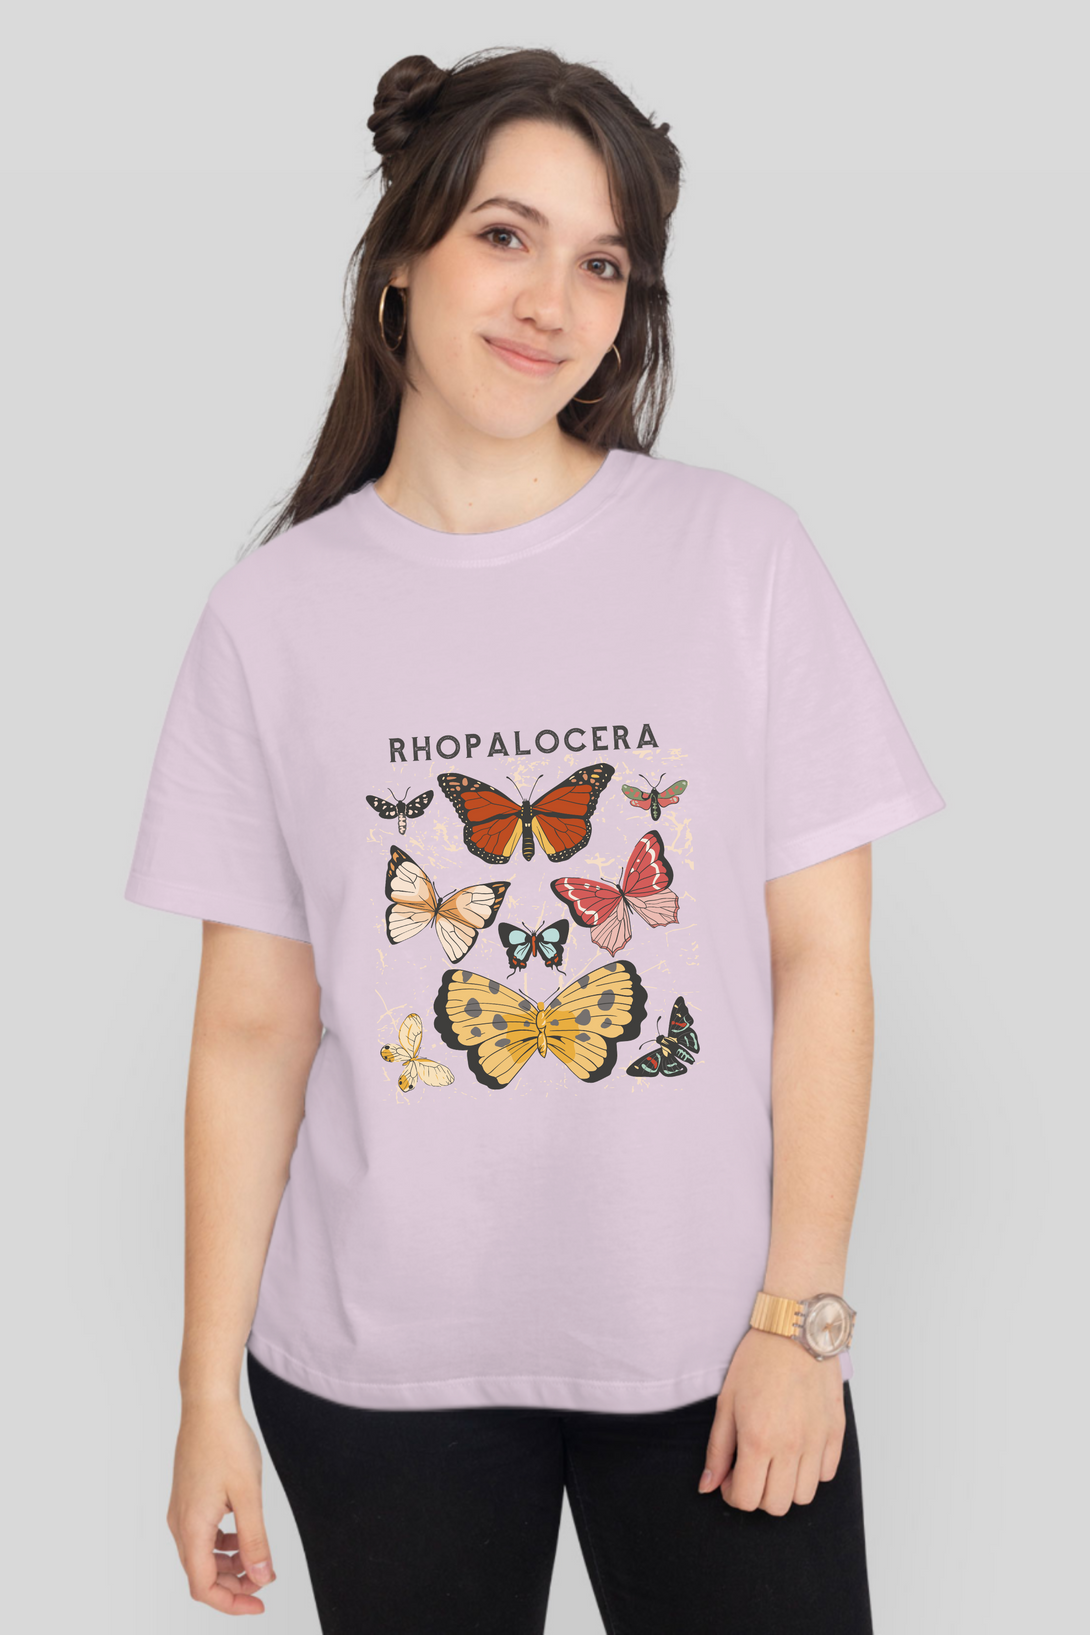 Rhopalocera Printed T-Shirt For Women - WowWaves - 8